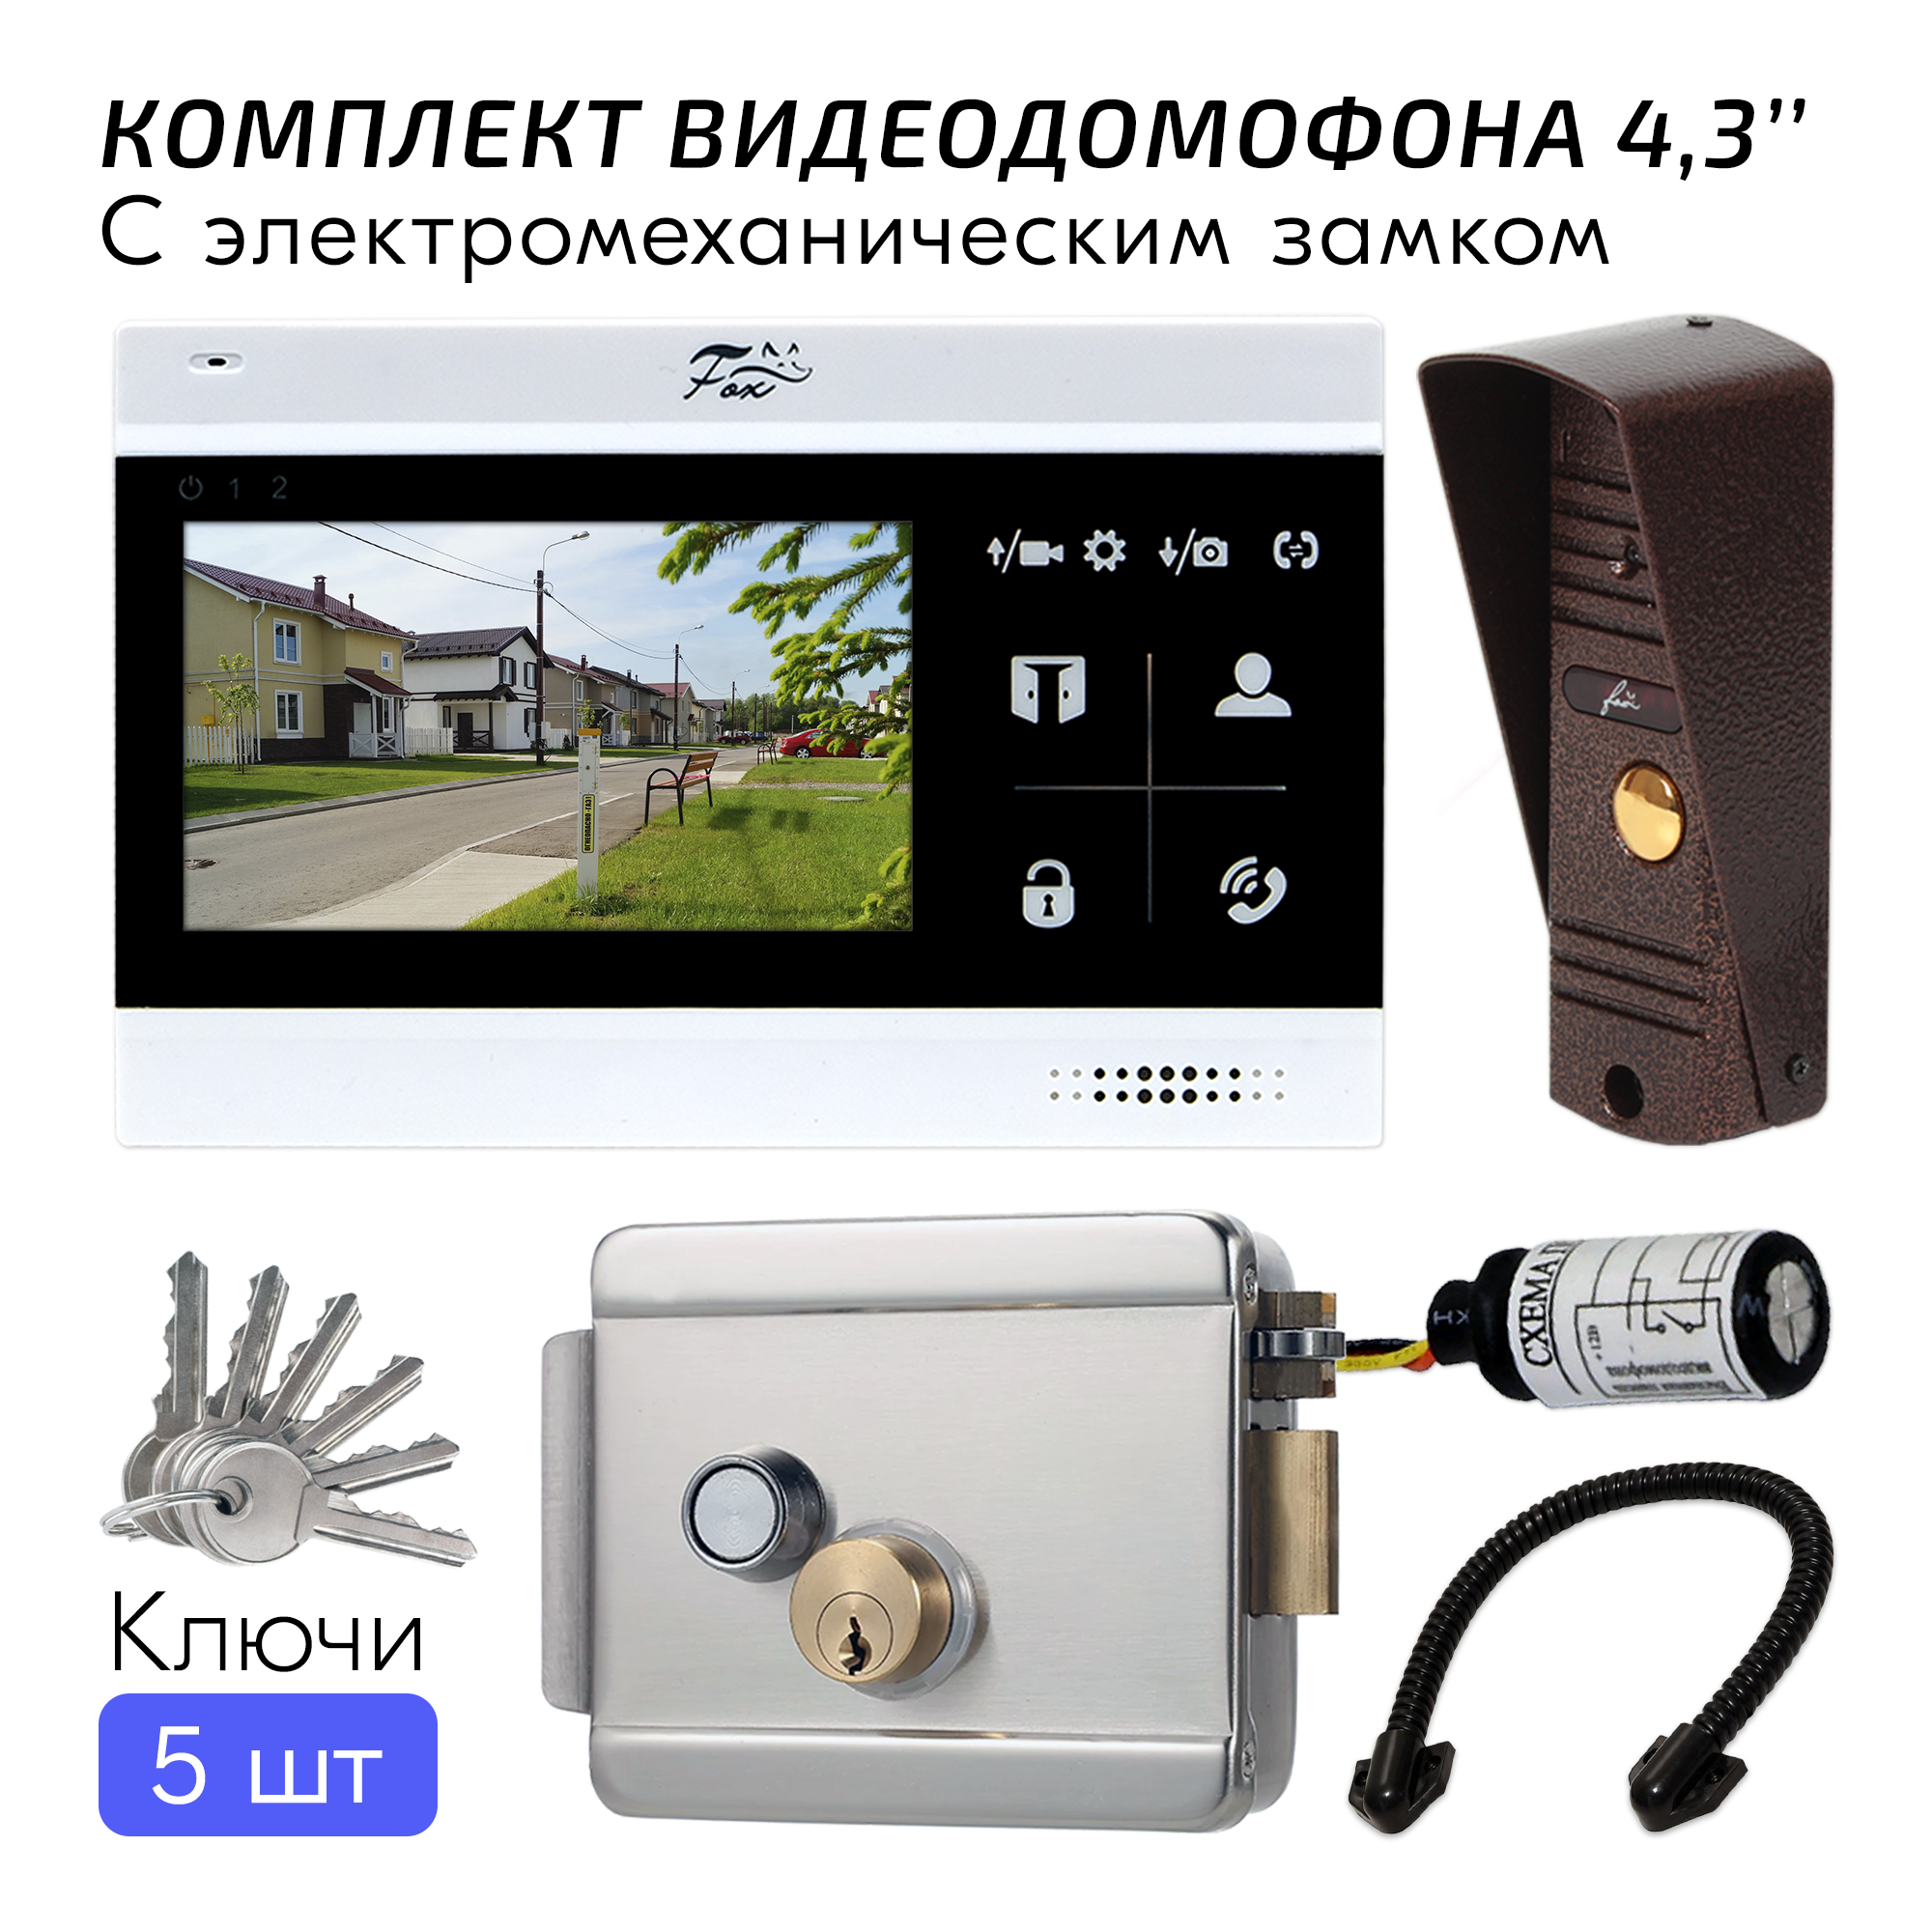 Комплект видеодомофона для дома FX-VD5S-KIT Черный, диагональ экрана 4.3 дюйма, электромеханический замок, антивандальная вызывная панель